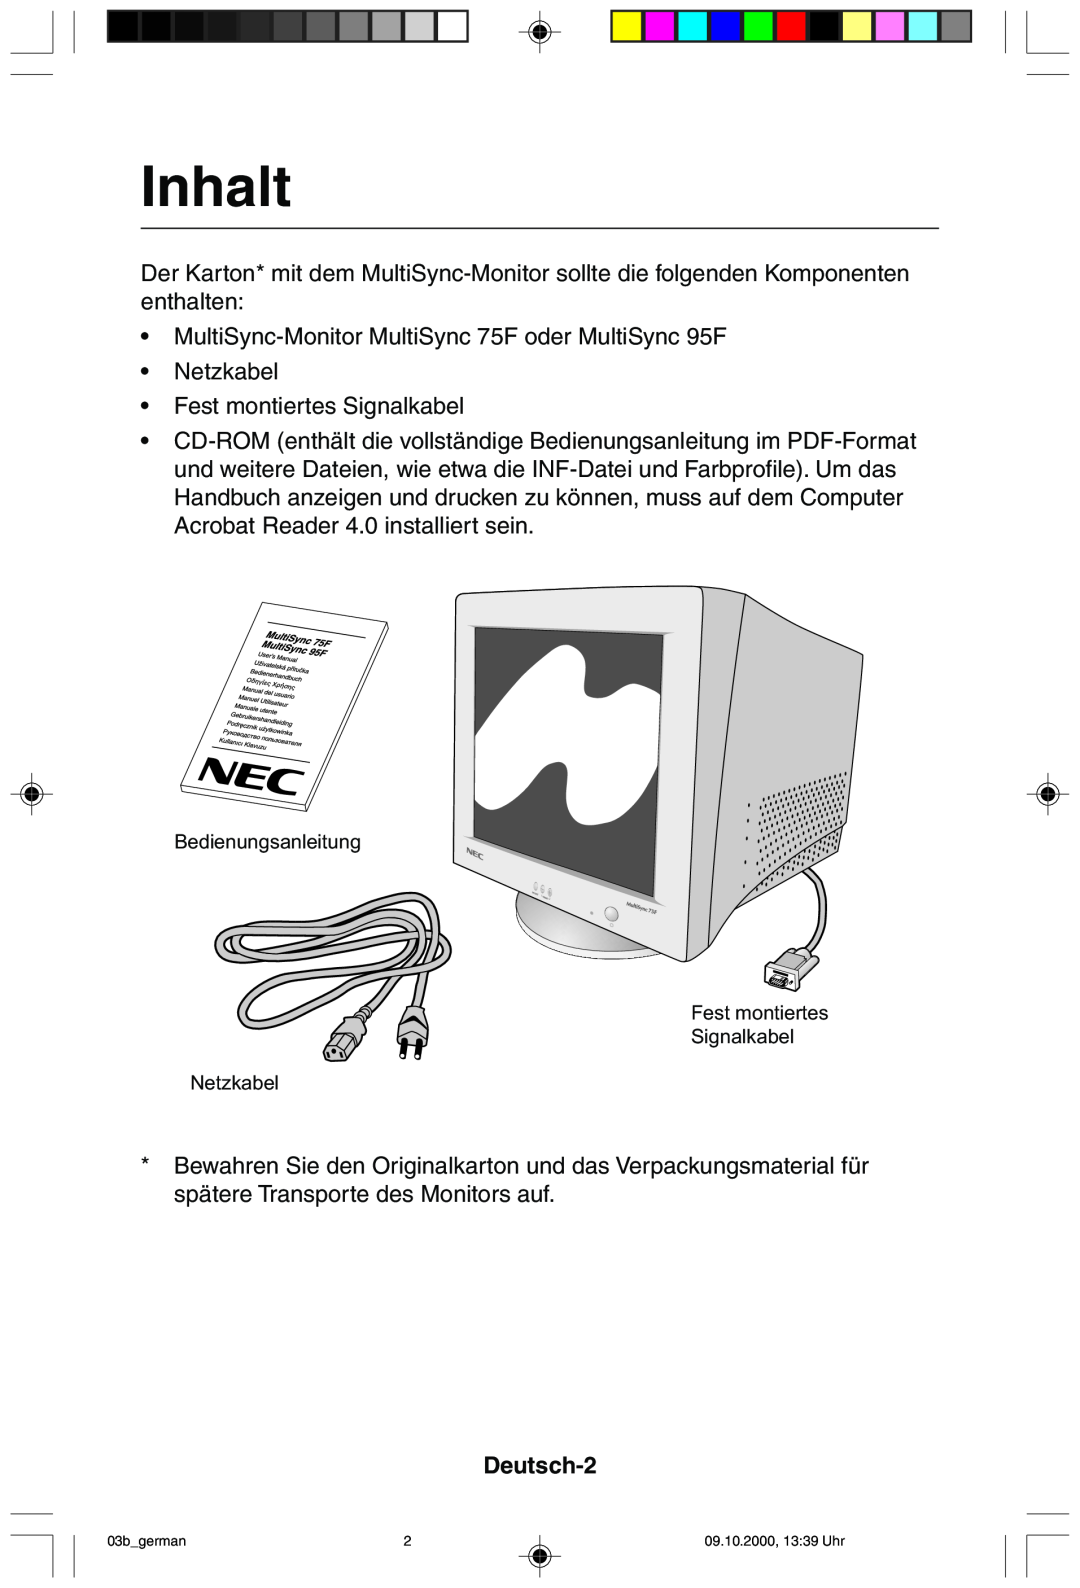 NEC 95F user manual Inhalt, Deutsch-2 